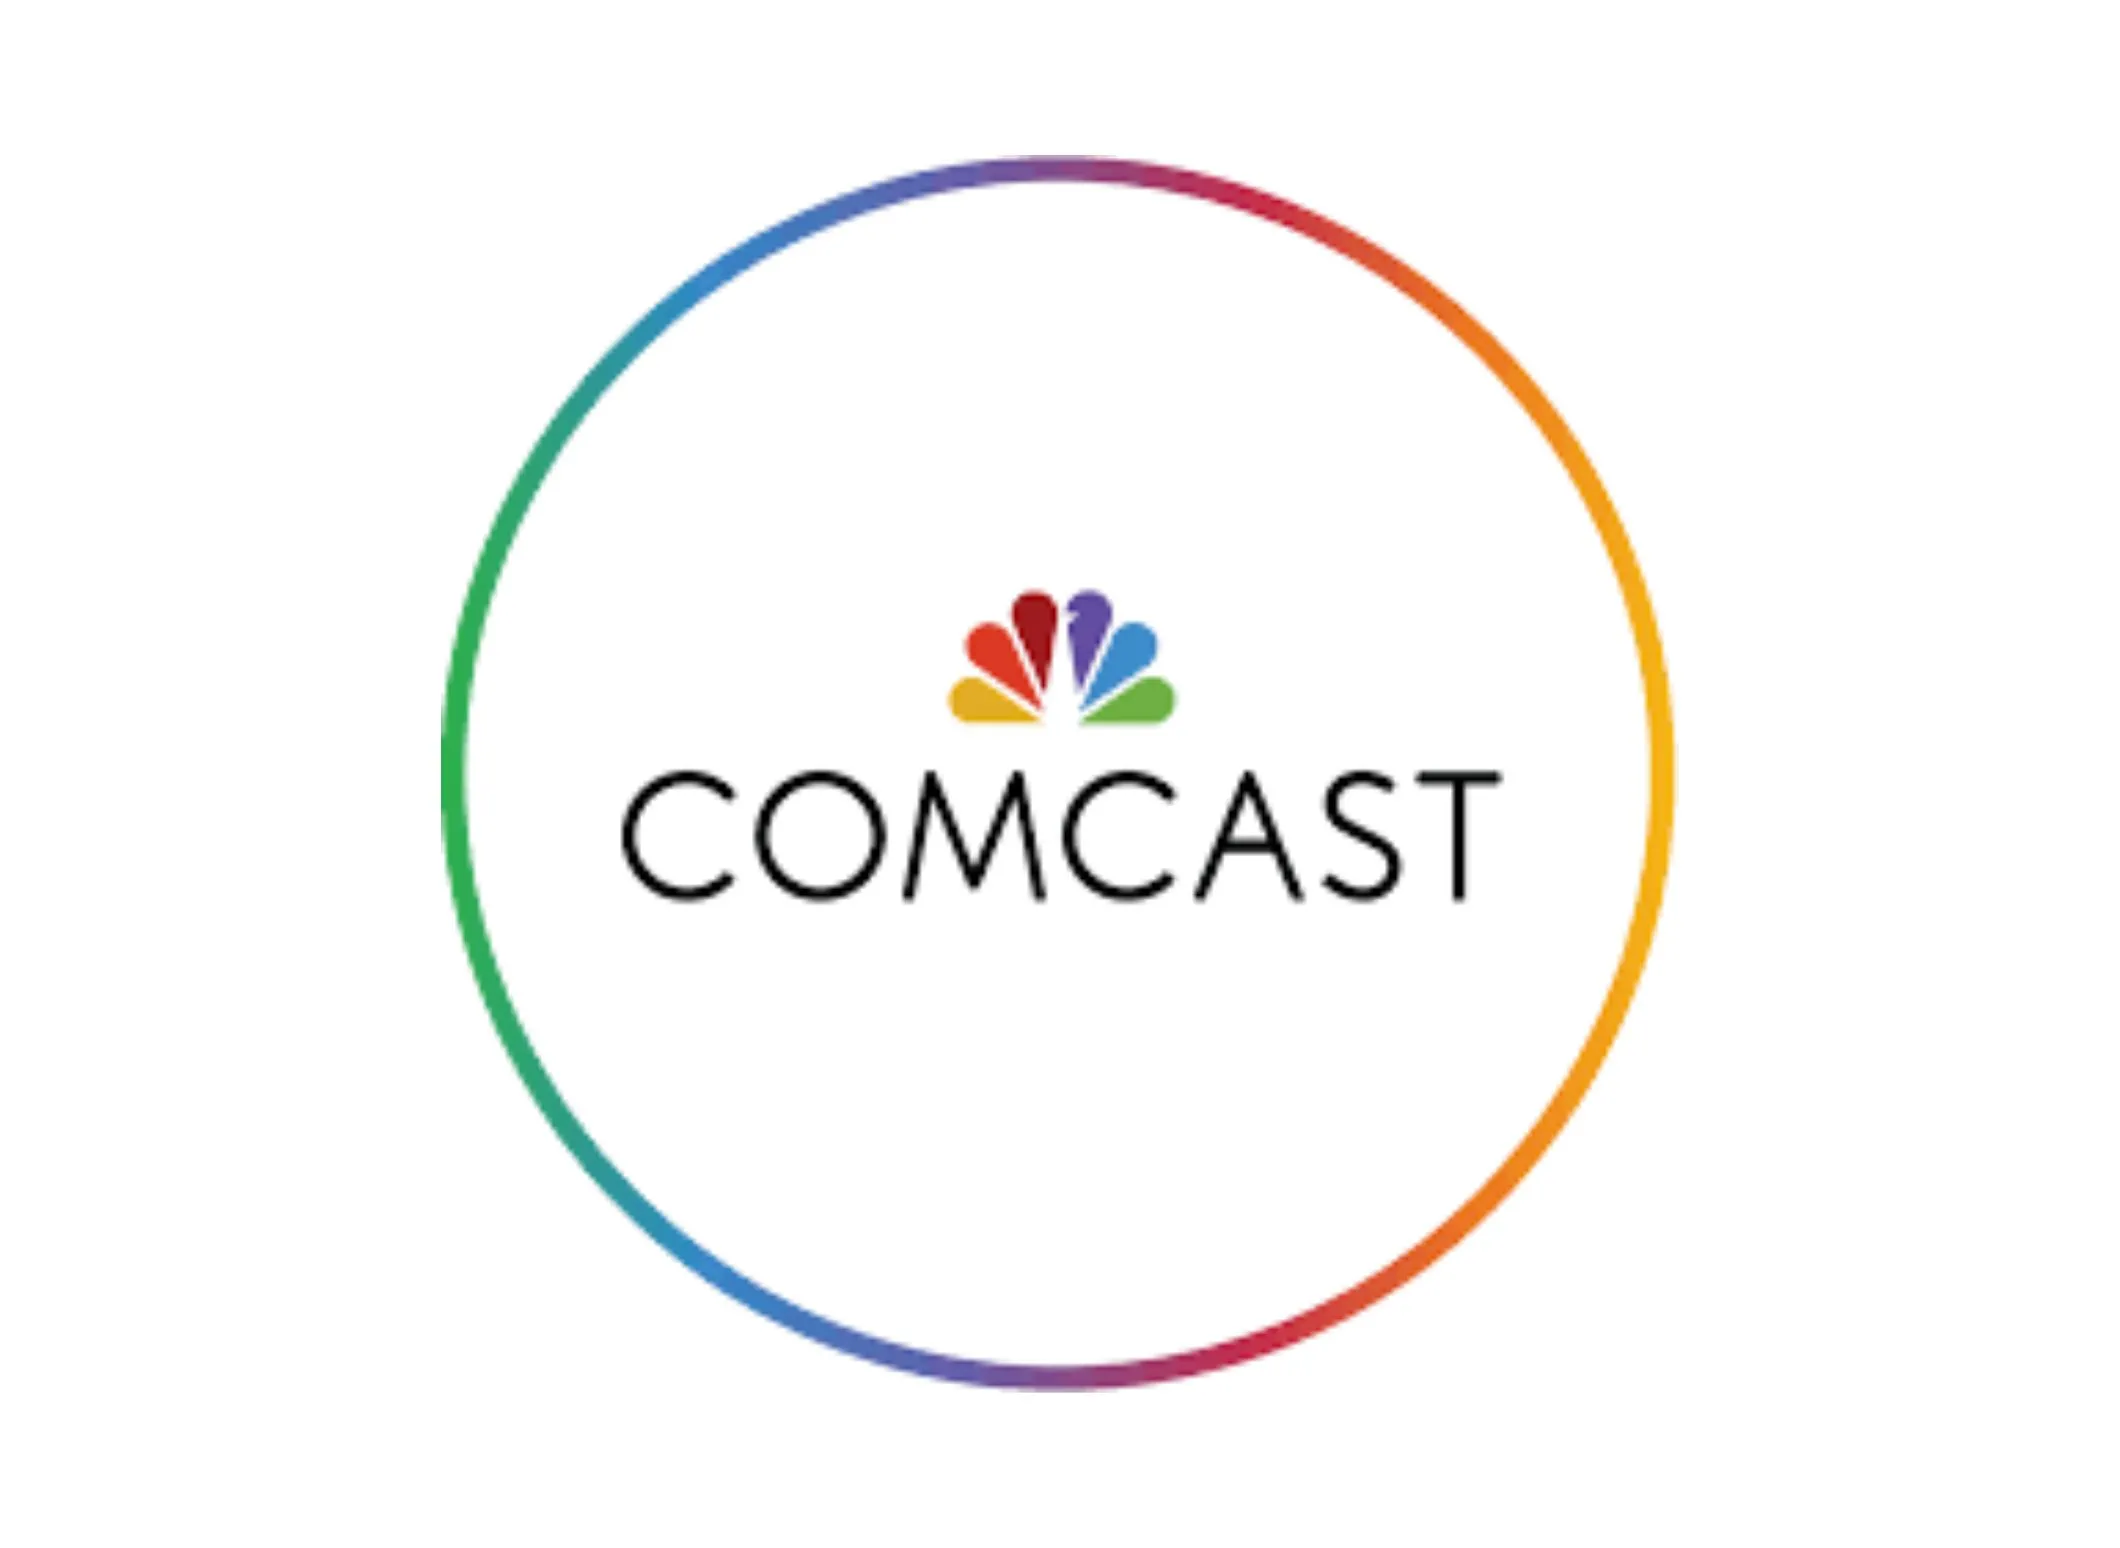 Comcast circle logo